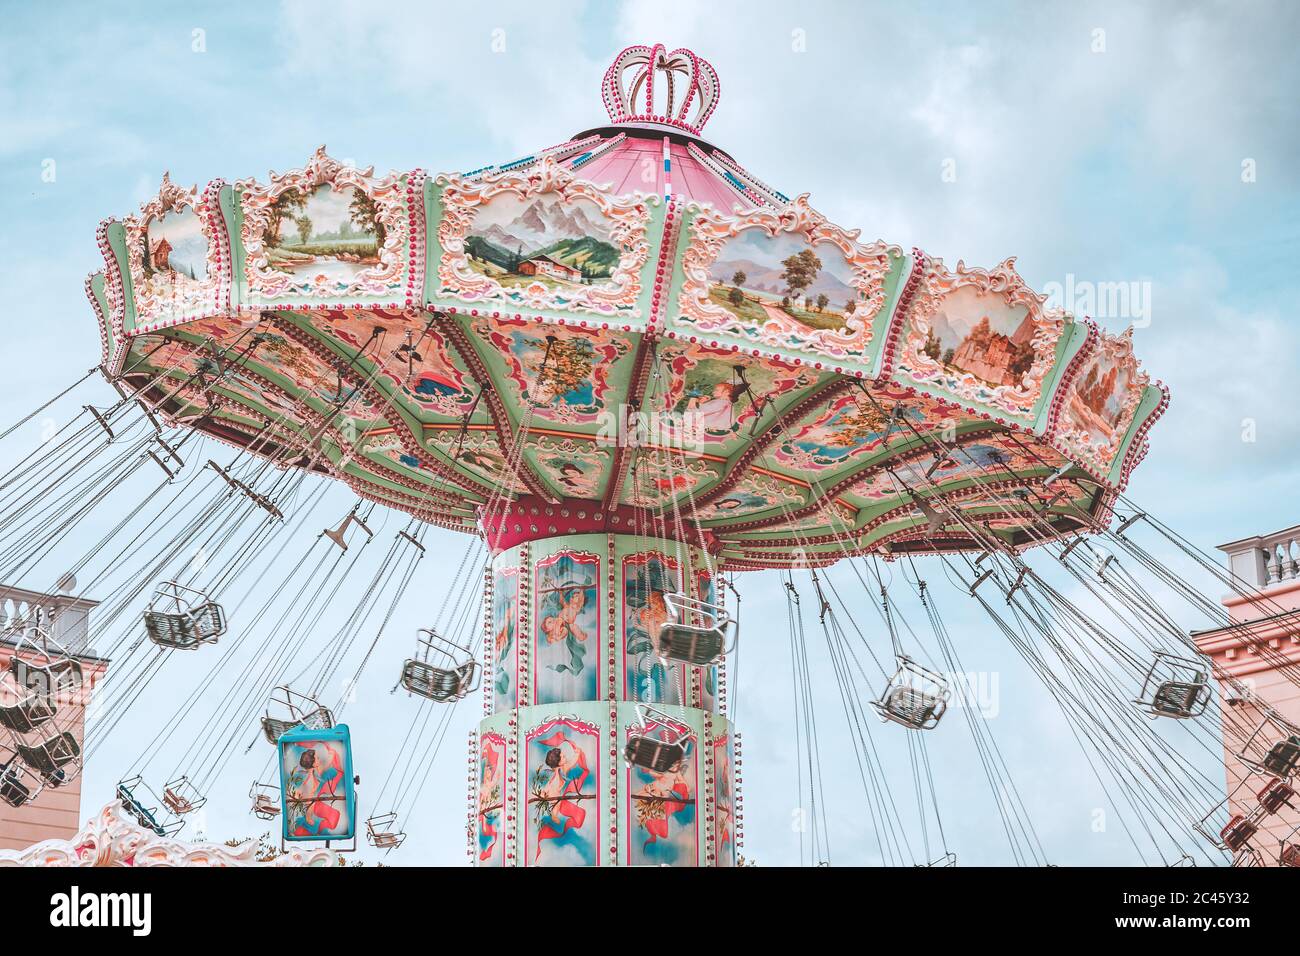 Merry-go-round, Prater in Vienna Stock Photo